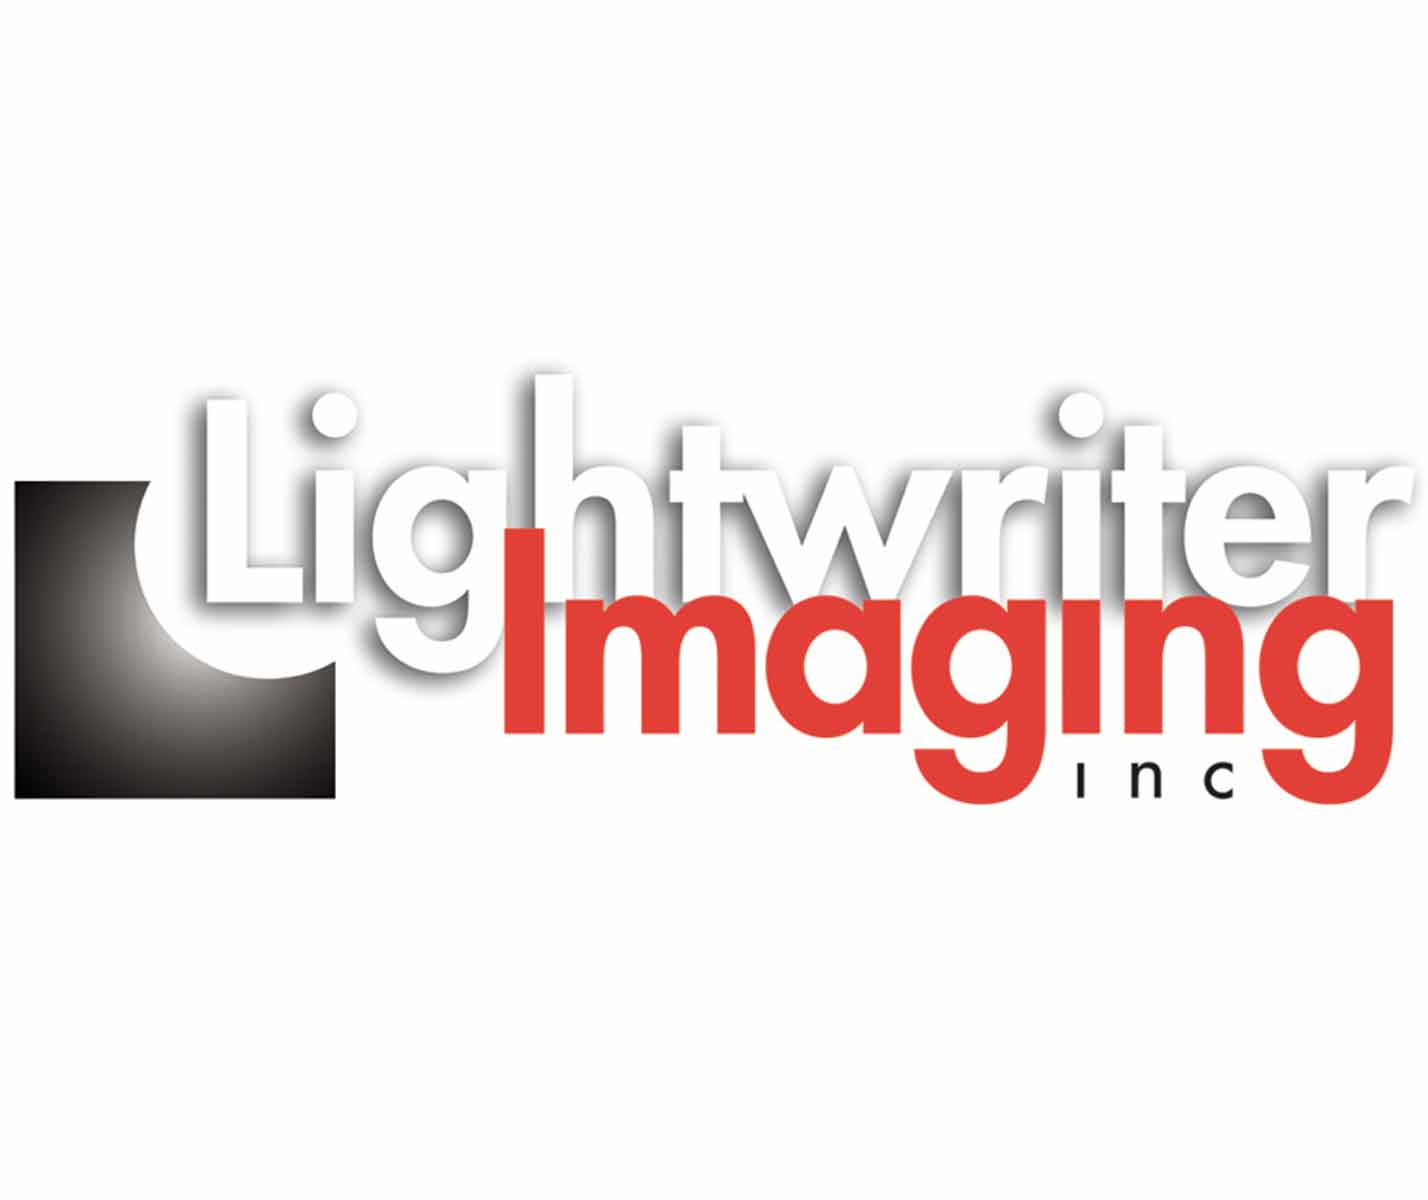 Lightwriter-imaging